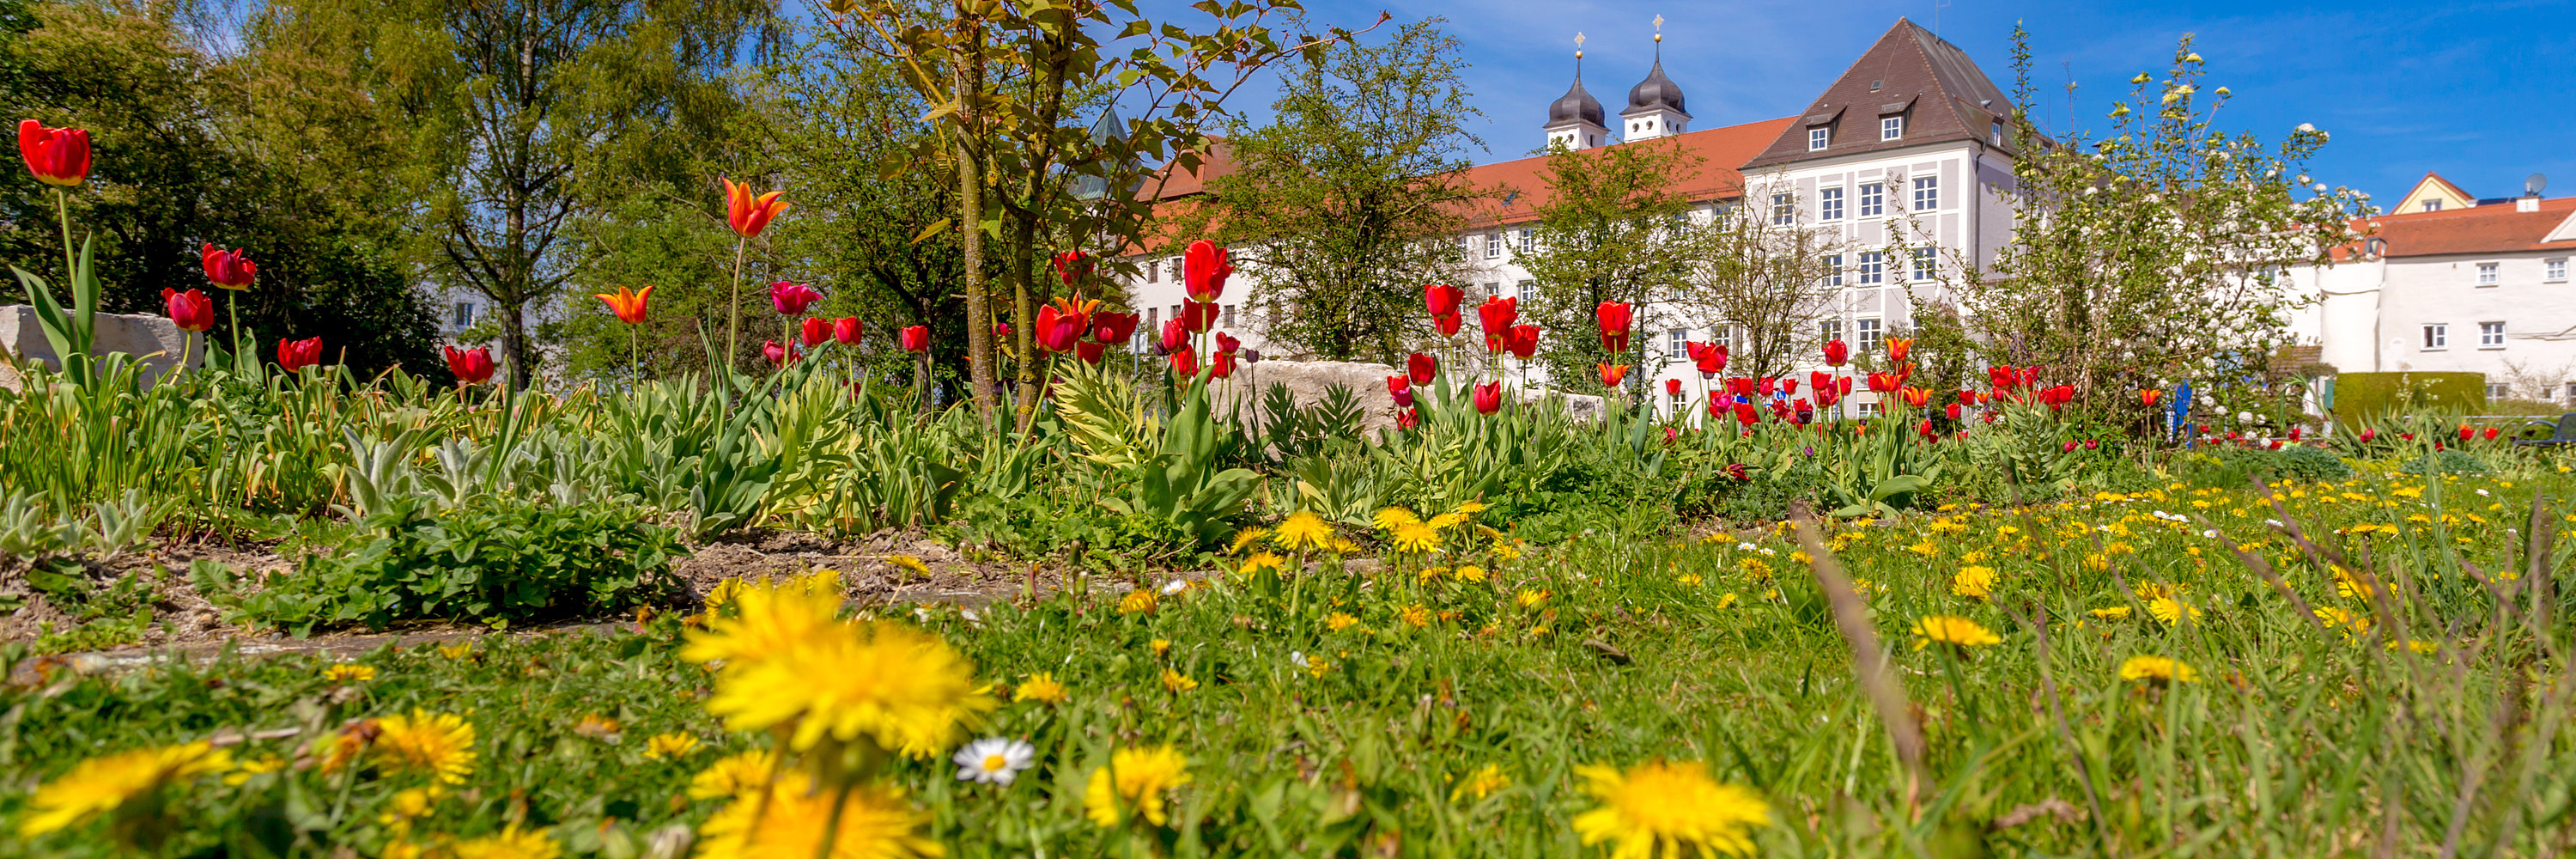 Bunte Blumenwiese am Hofgarten. Foto: Philllip Röger für die Stadt Günzburg